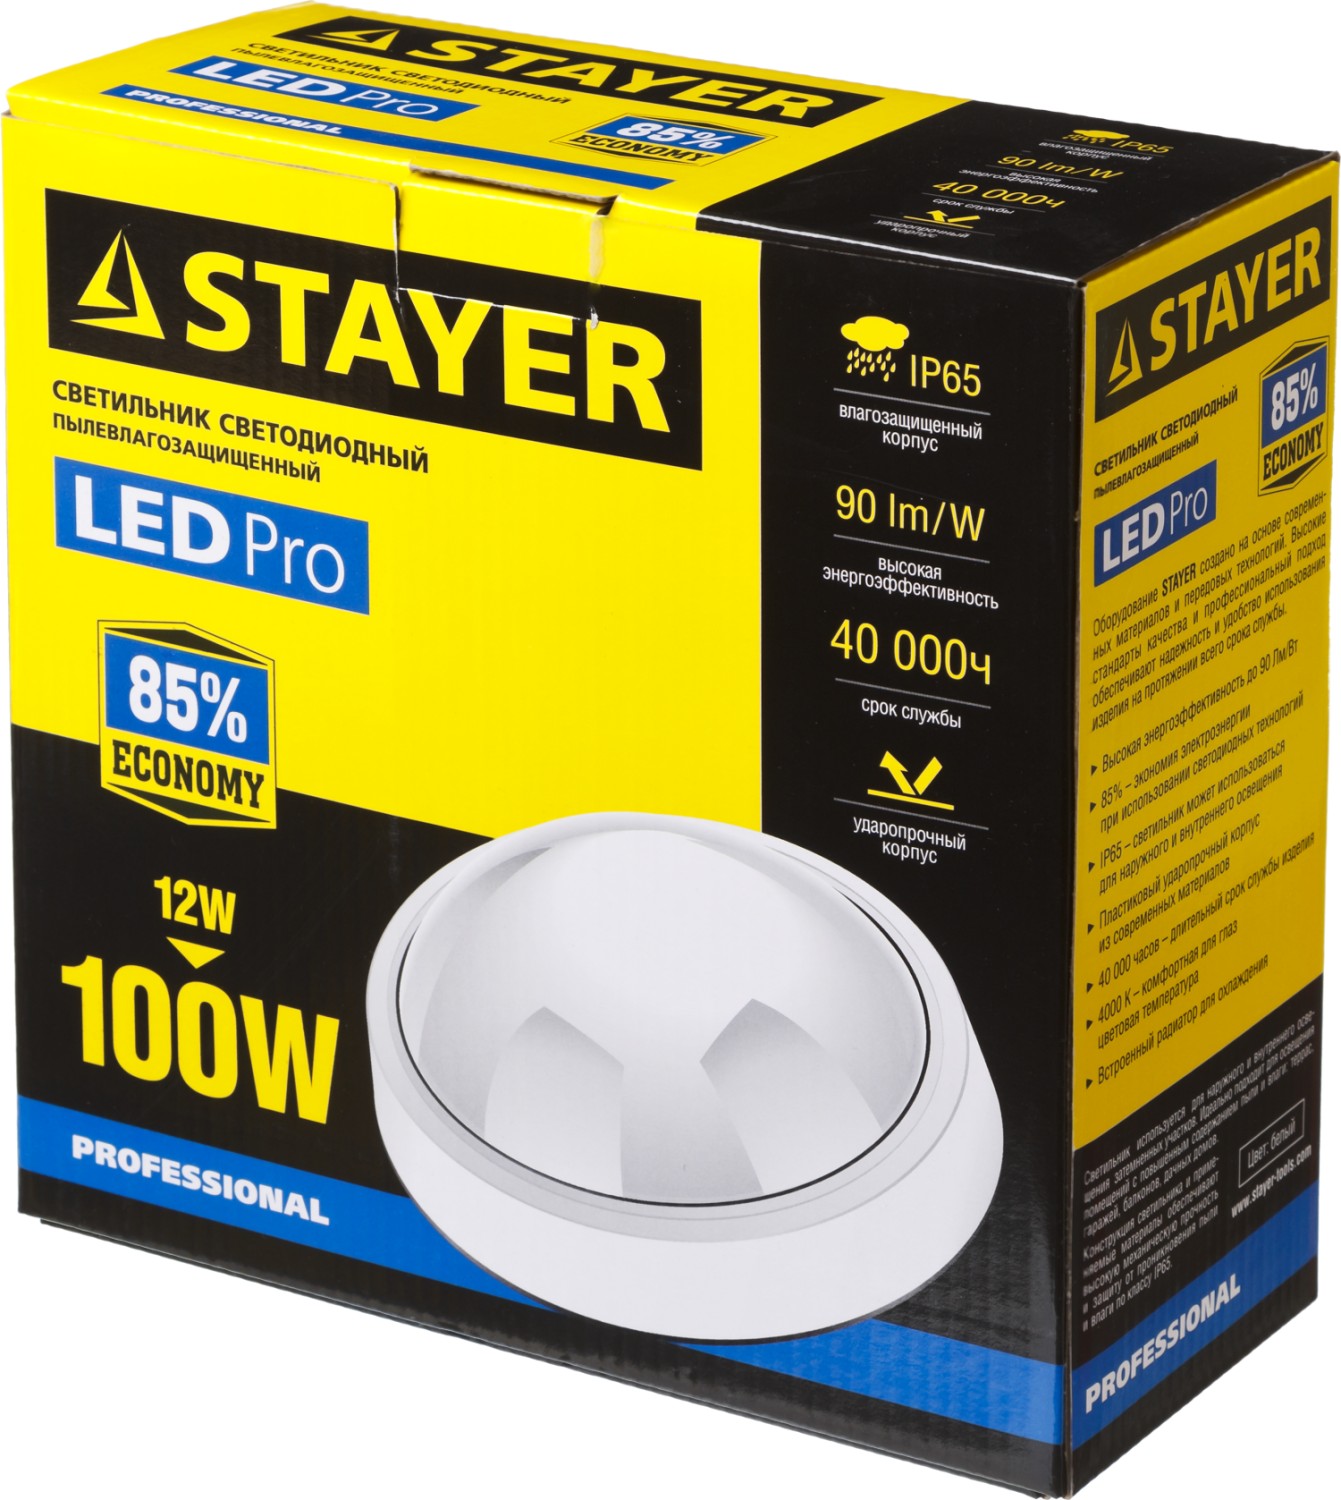 STAYER PROLight, 12(100 Вт), влагозащищенный светодиодный светильник, Professional (57362-100-W)